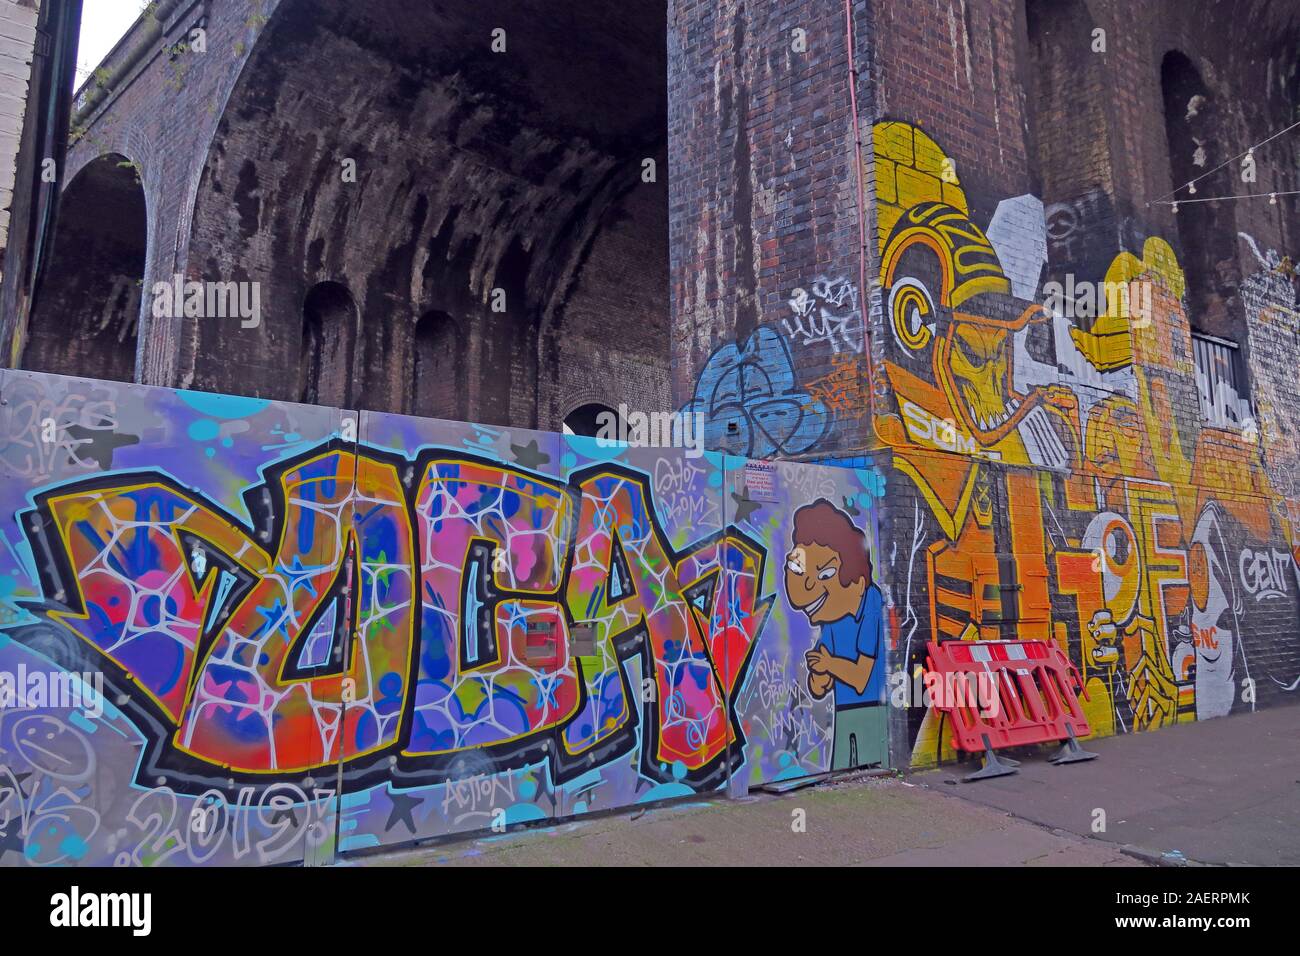 Graffiti Street art urbain, dans les voûtes de la rue à la passerelle, Digbeth, Bordesley & Highgate, Birmingham, West Midlands, Angleterre, Royaume-Uni, B5 5 E Banque D'Images